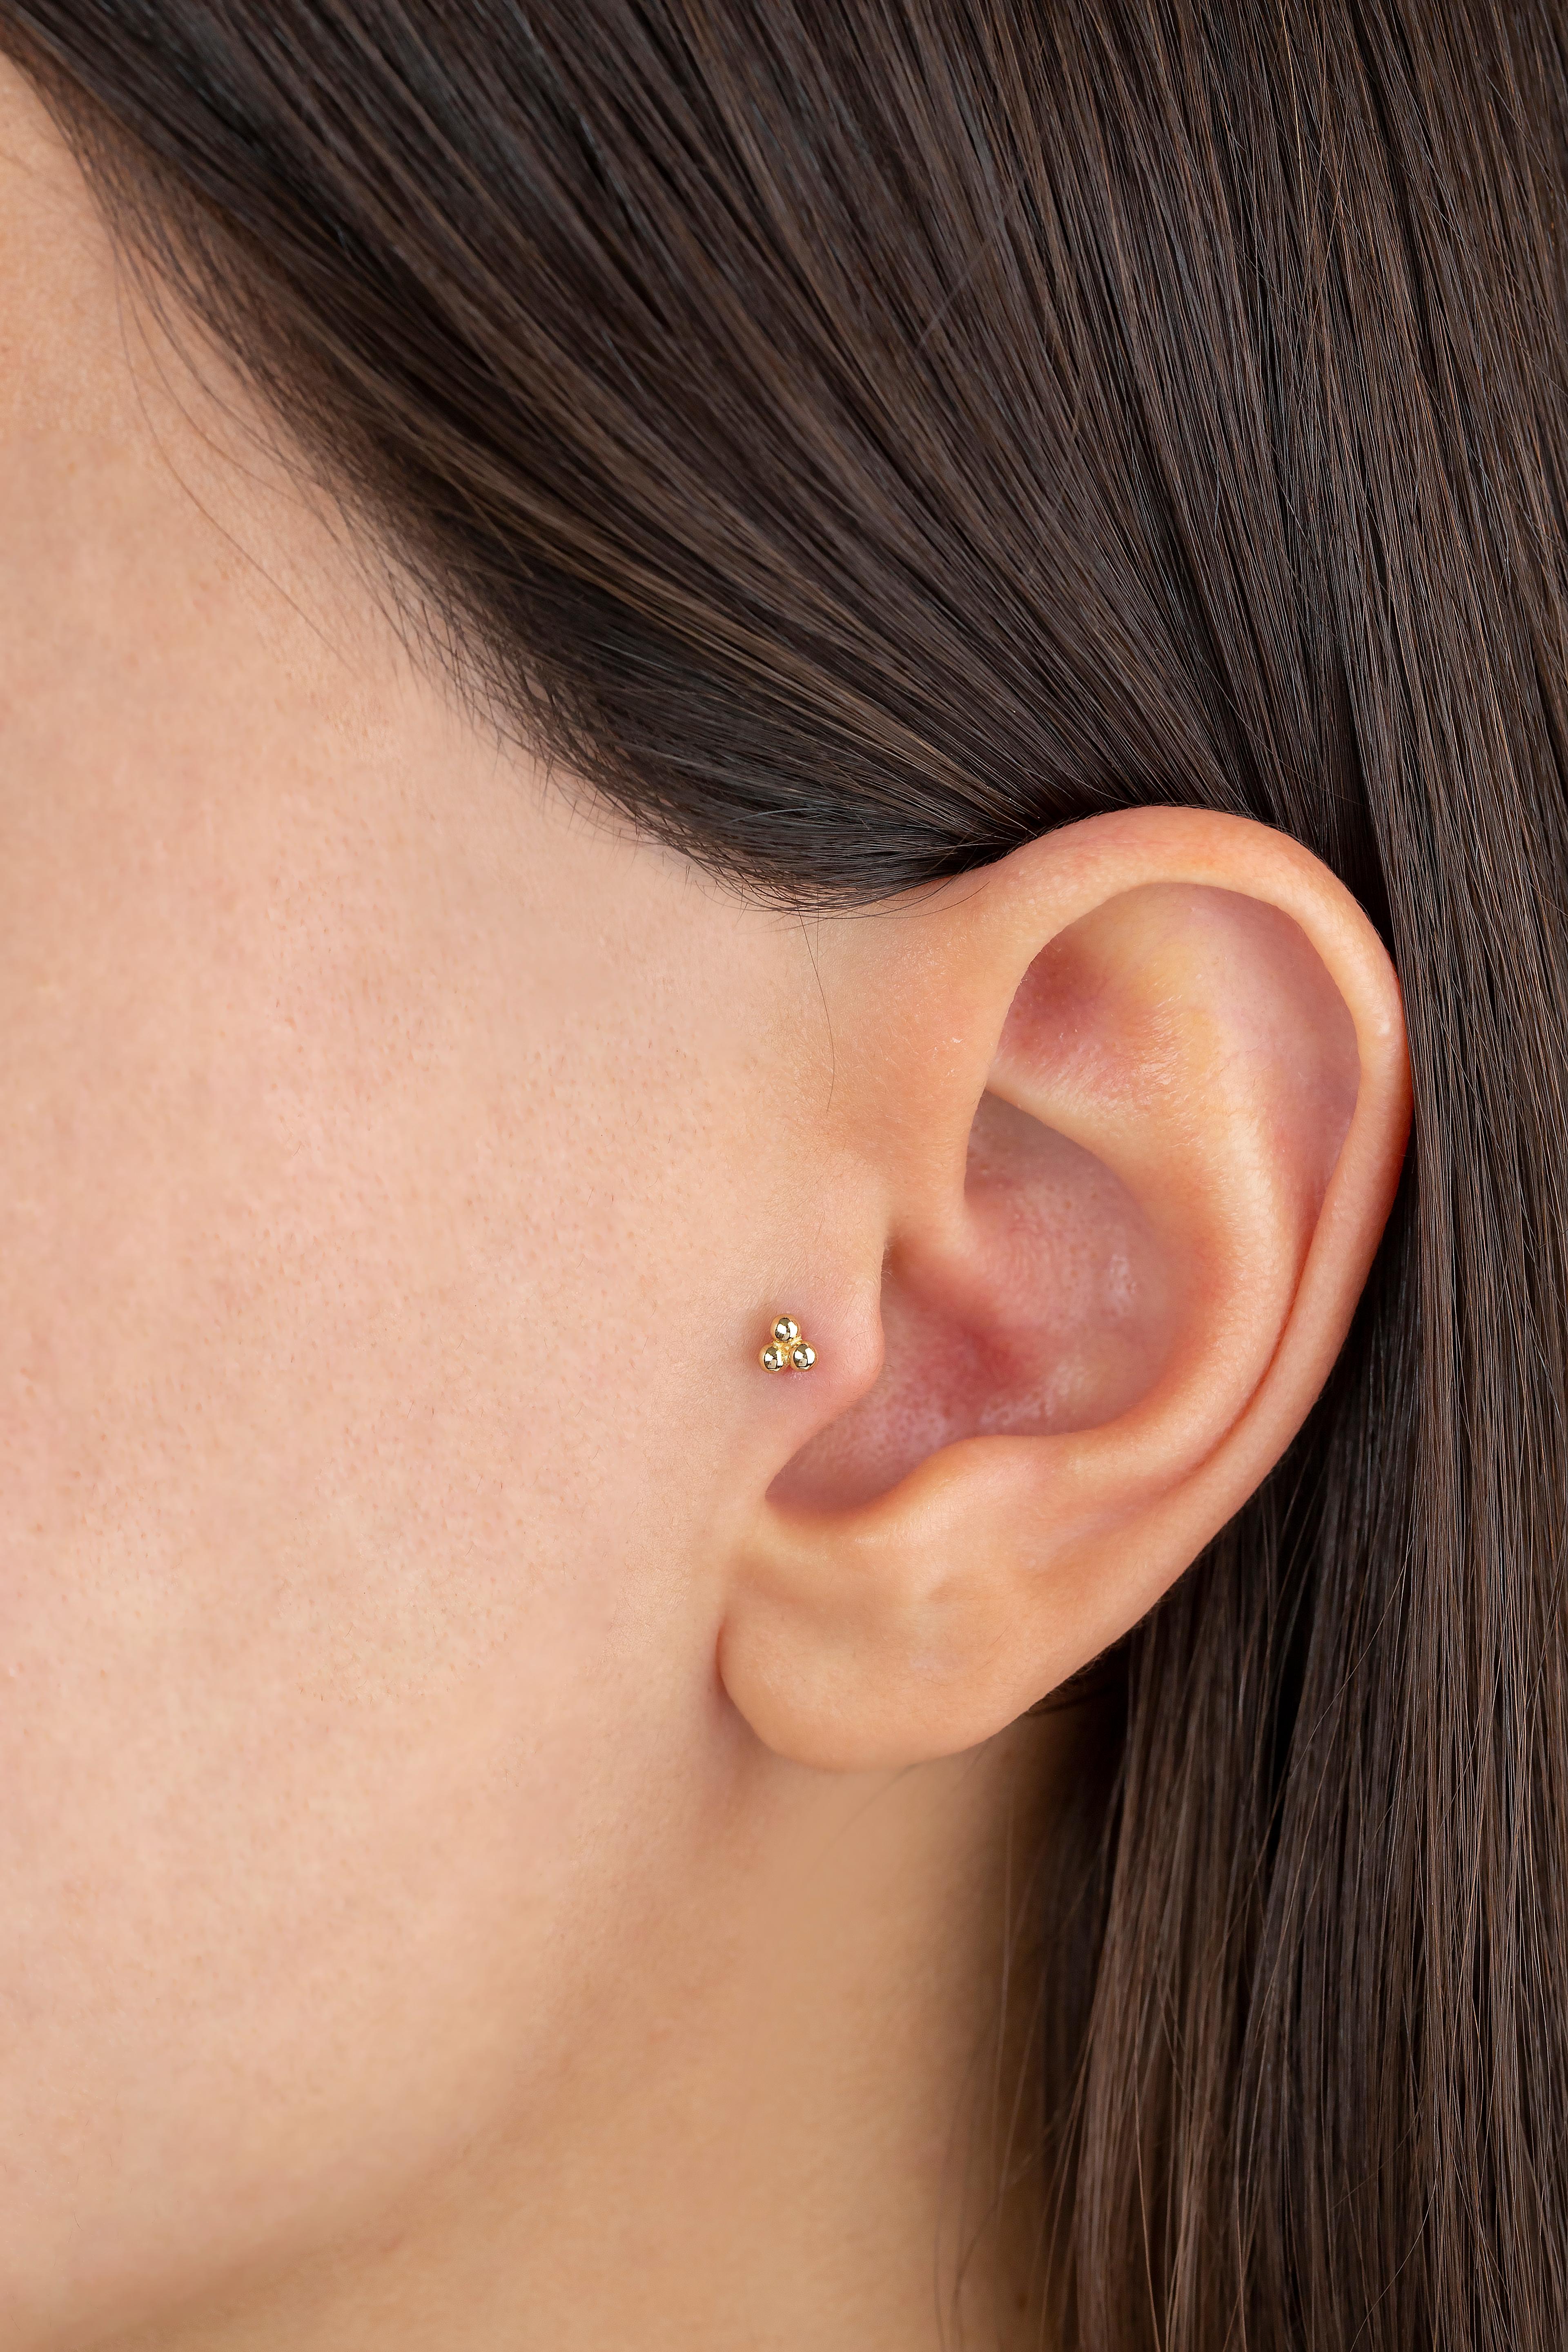 piercing en or 14K Tria Dot, boucles d'oreilles en or à trois boules

Vous pouvez également utiliser le piercing comme boucle d'oreille ! Ce piercing convient également pour le tragus, le nez, l'hélix, le lobe, le plat, la méduse, le monreo, le